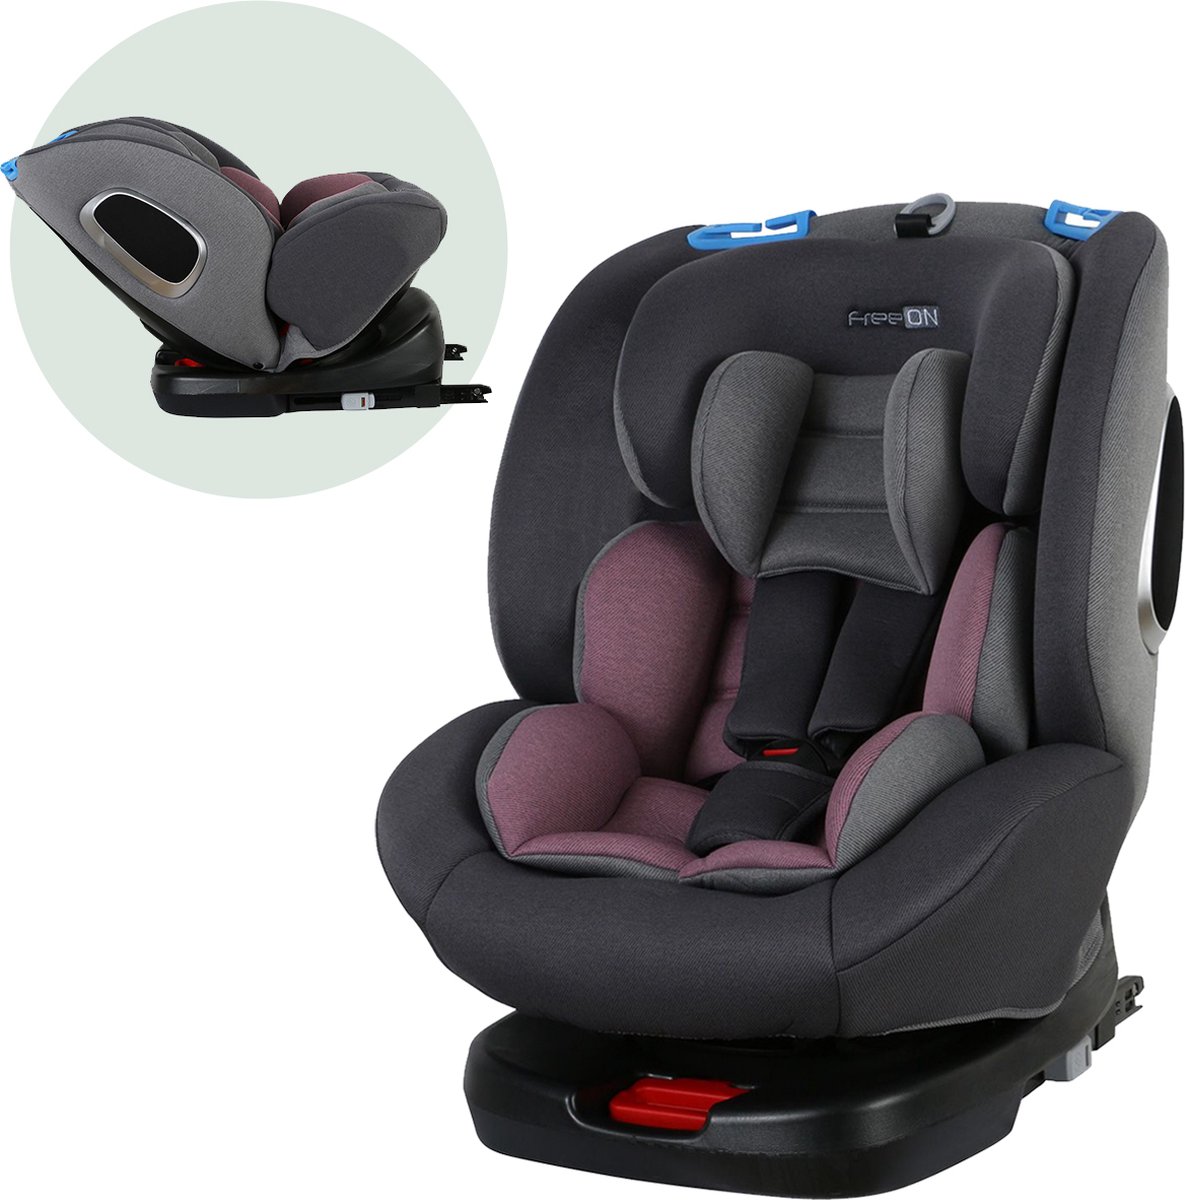 FreeON autostoel Polar 360° draaibaar met isoFix Grijs-Roze (0-36kg) - Groep 0-1-2-3 autostoel voor kinderen van 0 tot 12 jaar